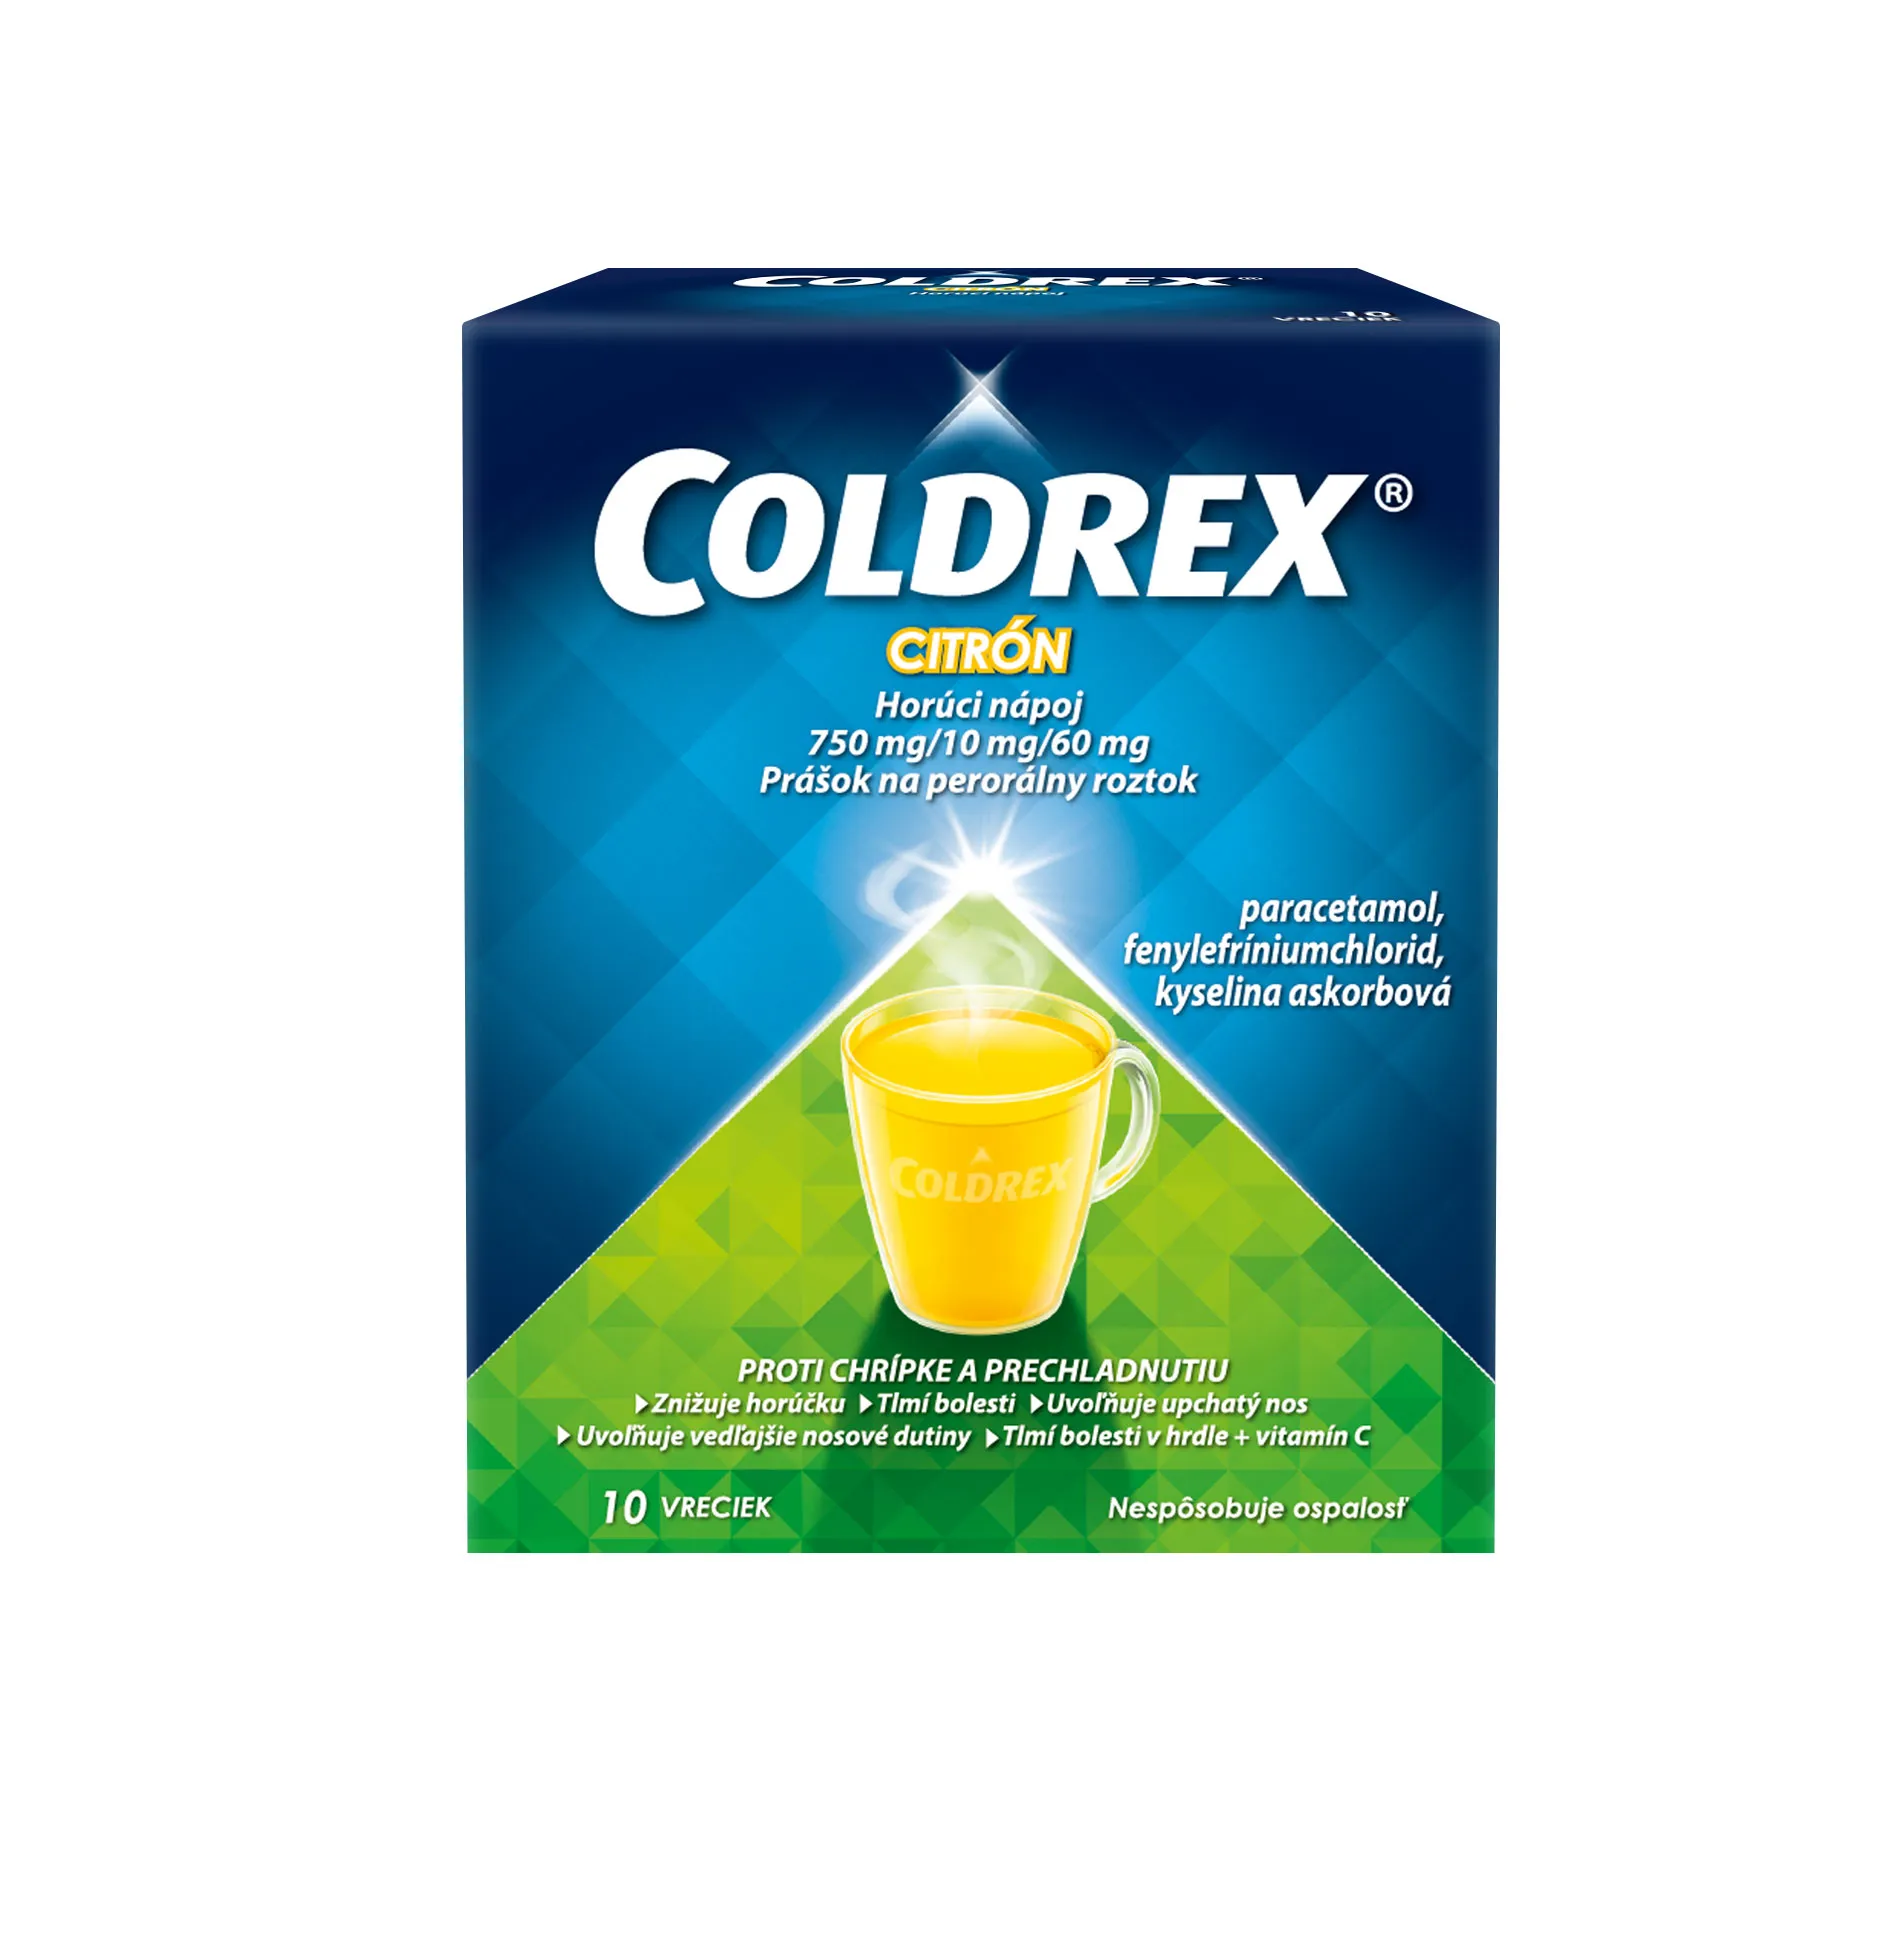 COLDREX Horúci nápoj Citrón, 10 vreciek 1×10 ks, liek proti chrípke a prechladnutiu